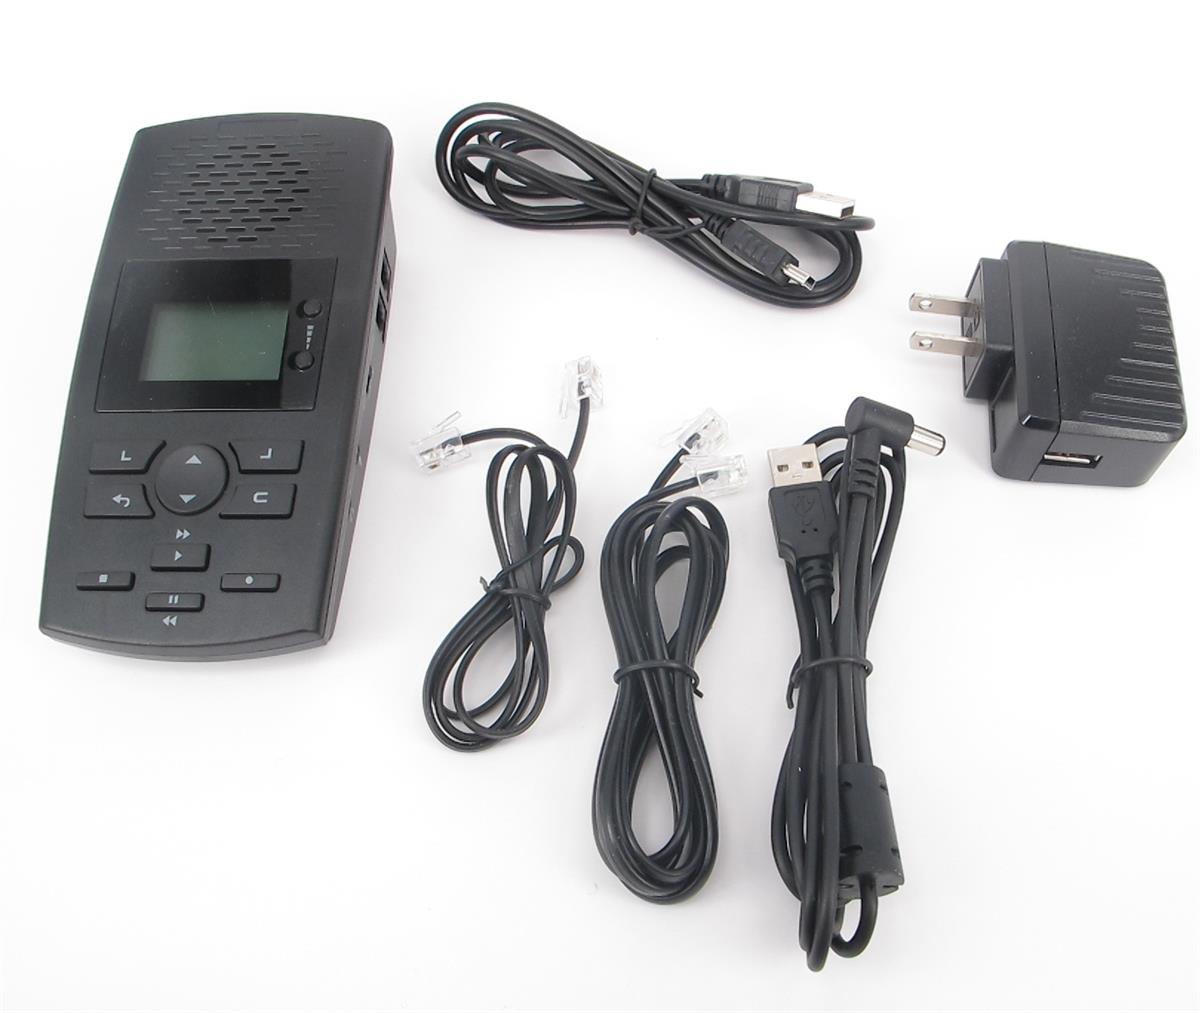 SR100 telephone Voice recorder